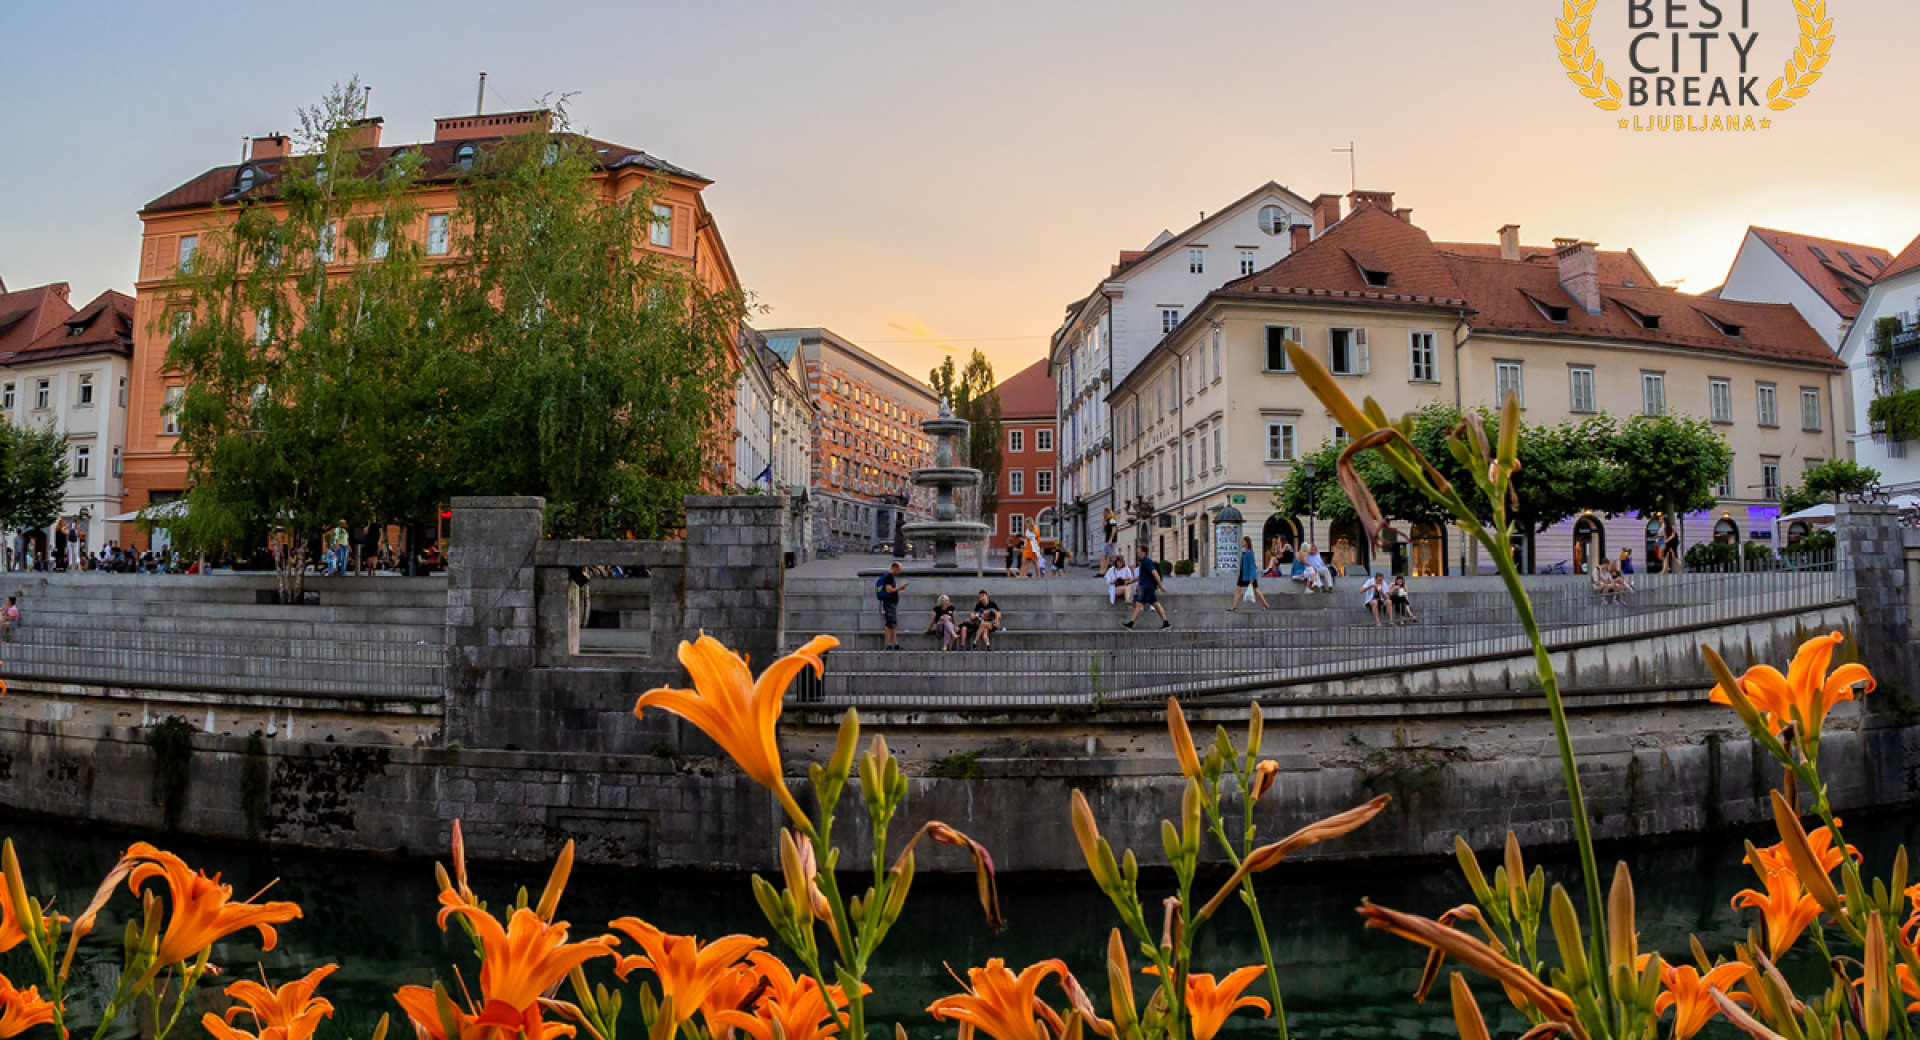 Mestno sredisce z velikim vodnjakom. Oranzne lilije pred reko. Ljudje posedajo ob reki.